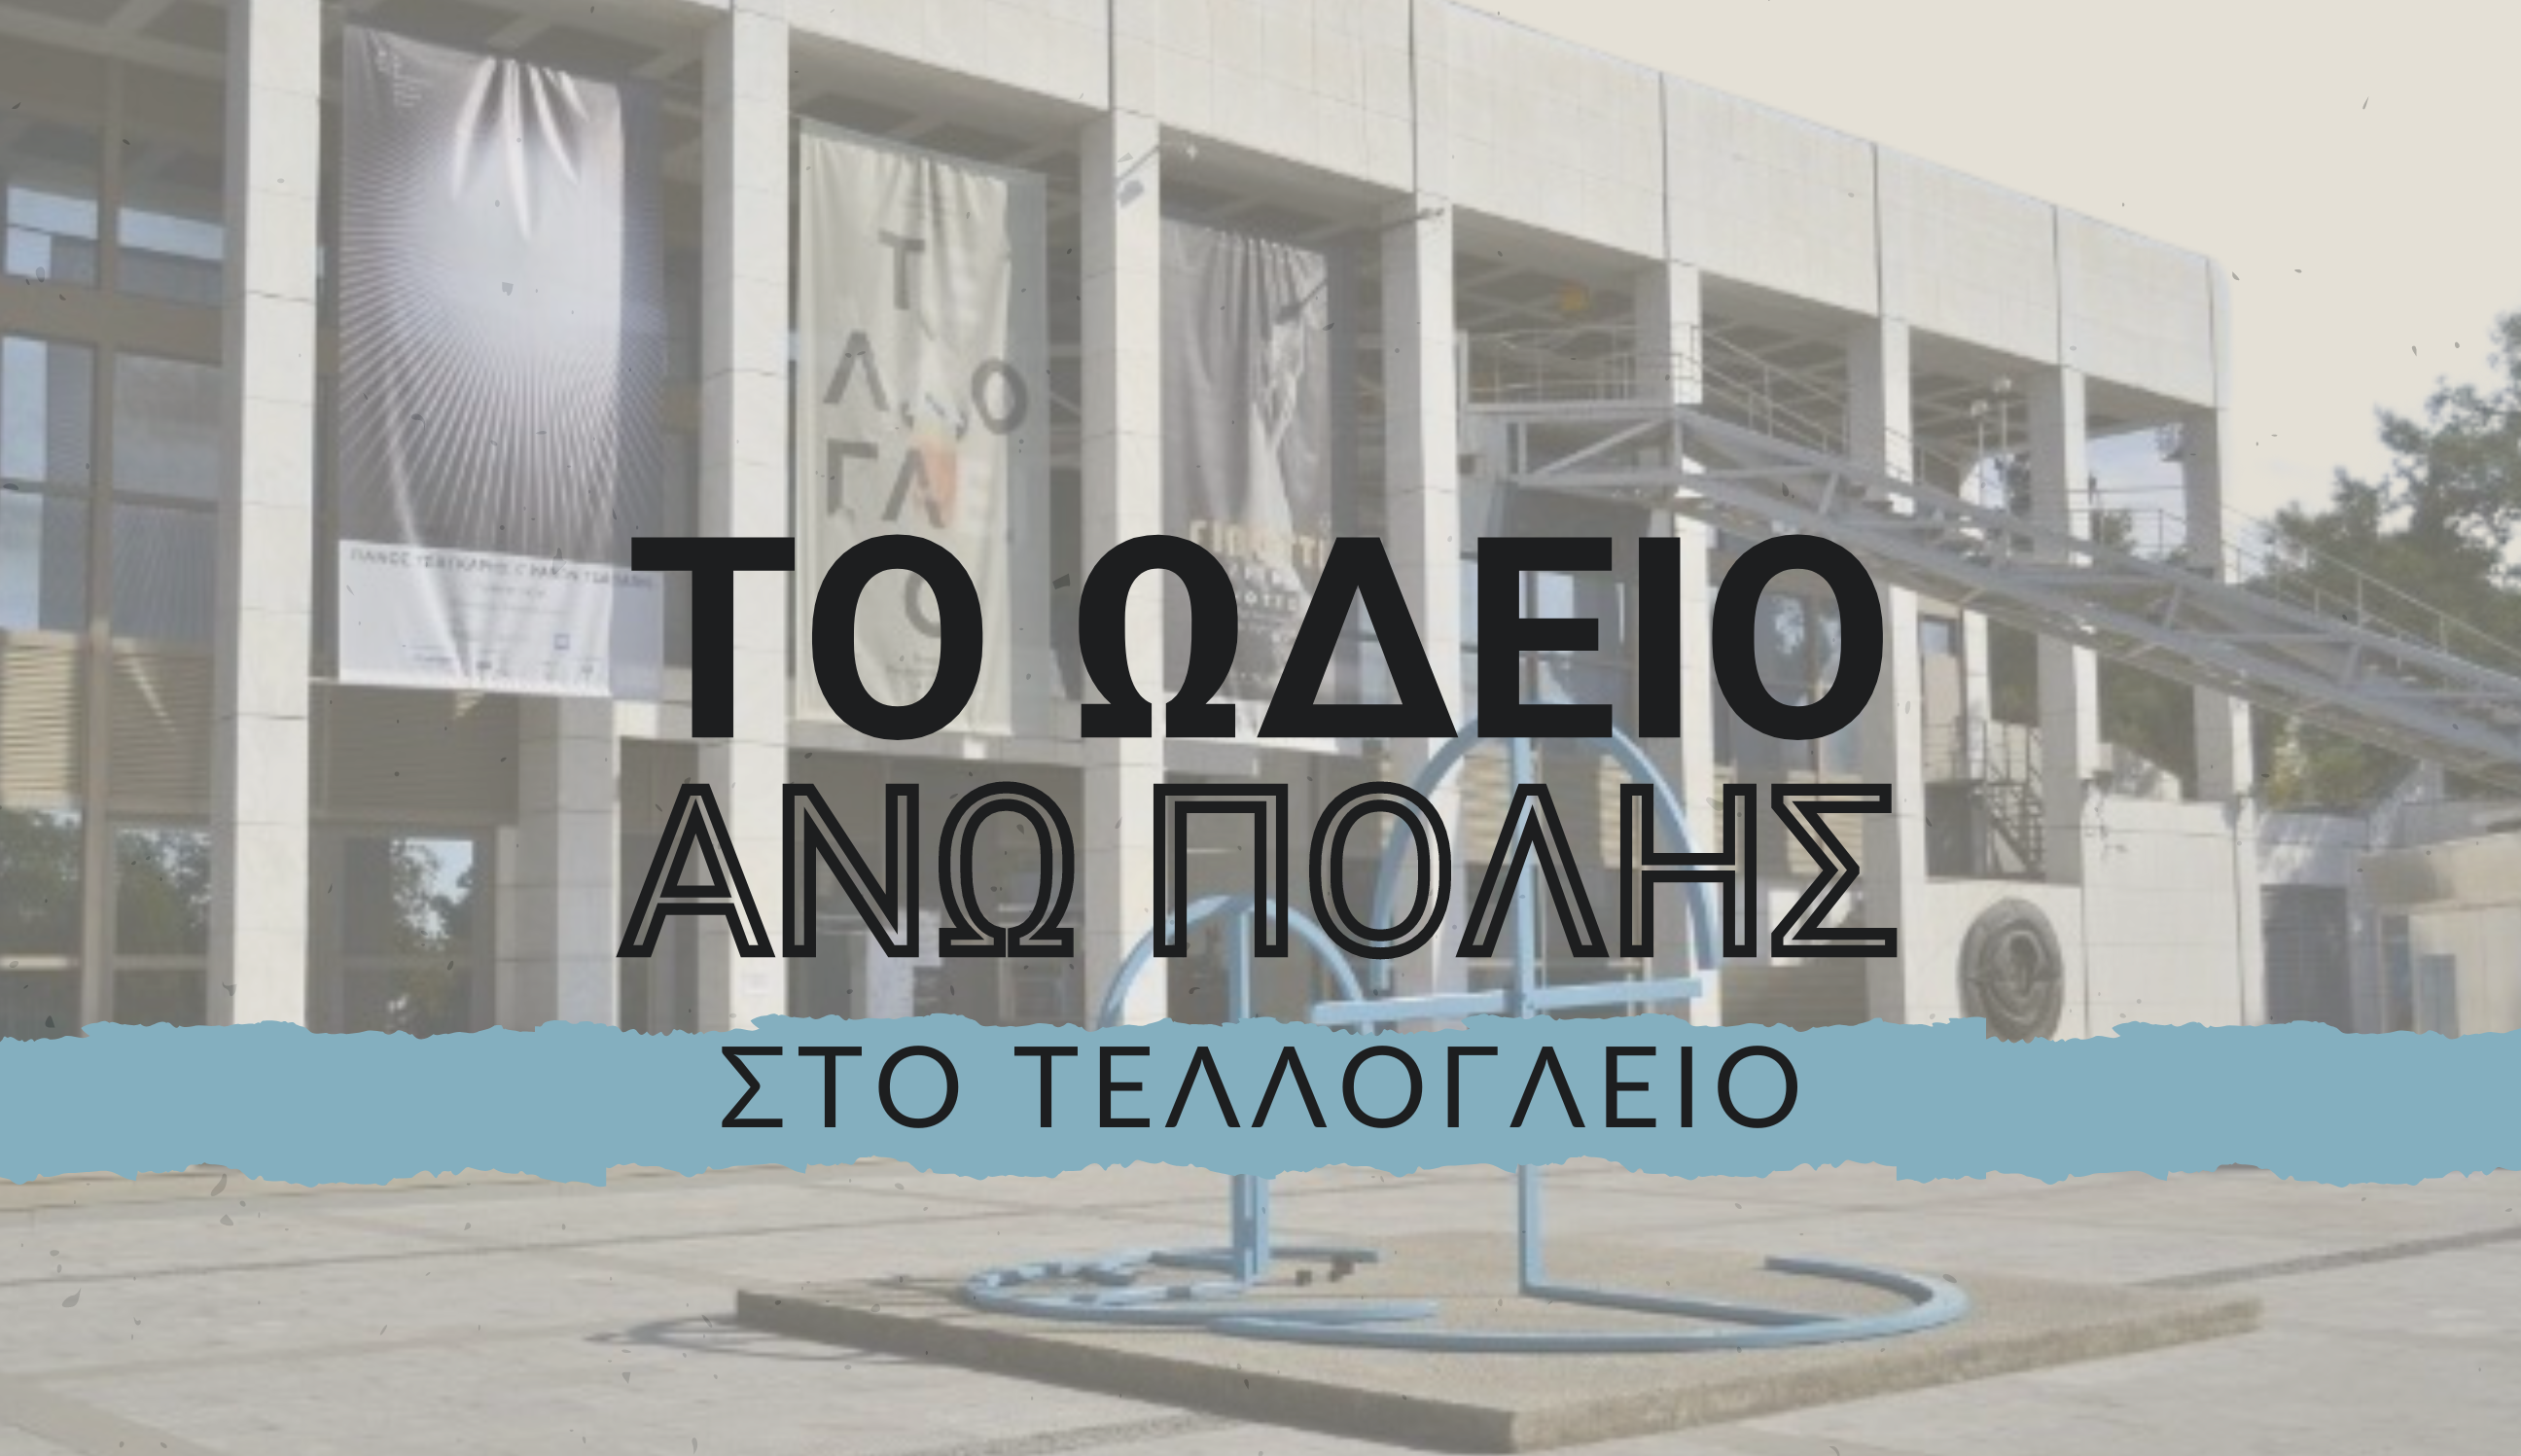 Θεσσαλονίκη: Θεματικές Συναυλίες του Ωδείου Άνω Πόλης στο Τελλόγλειο Ίδρυμα Τεχνών του ΑΠΘ